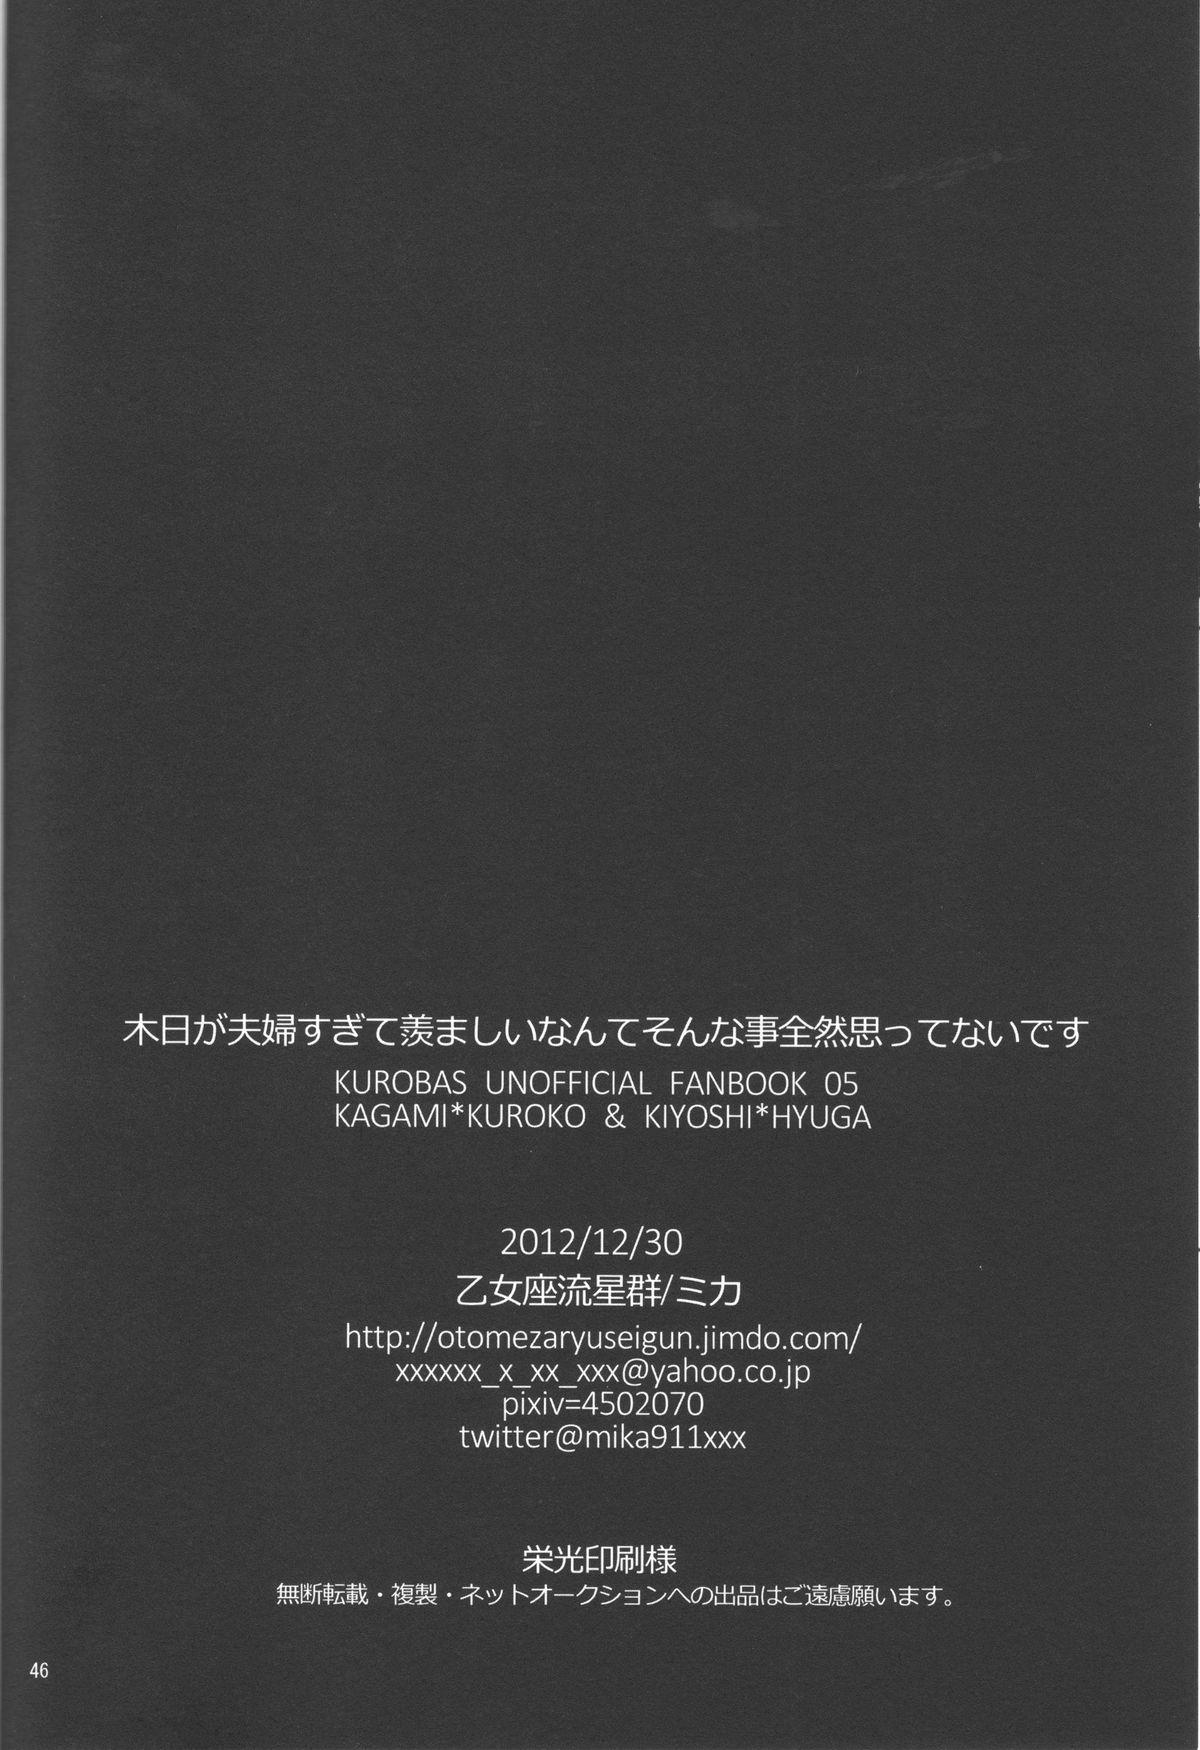 Stockings KiHyuu ga Fuufu Sugite Urayamashii Nante Sonna Koto Kanzen Omotte Nai Desu - Kuroko no basuke Verified Profile - Page 45